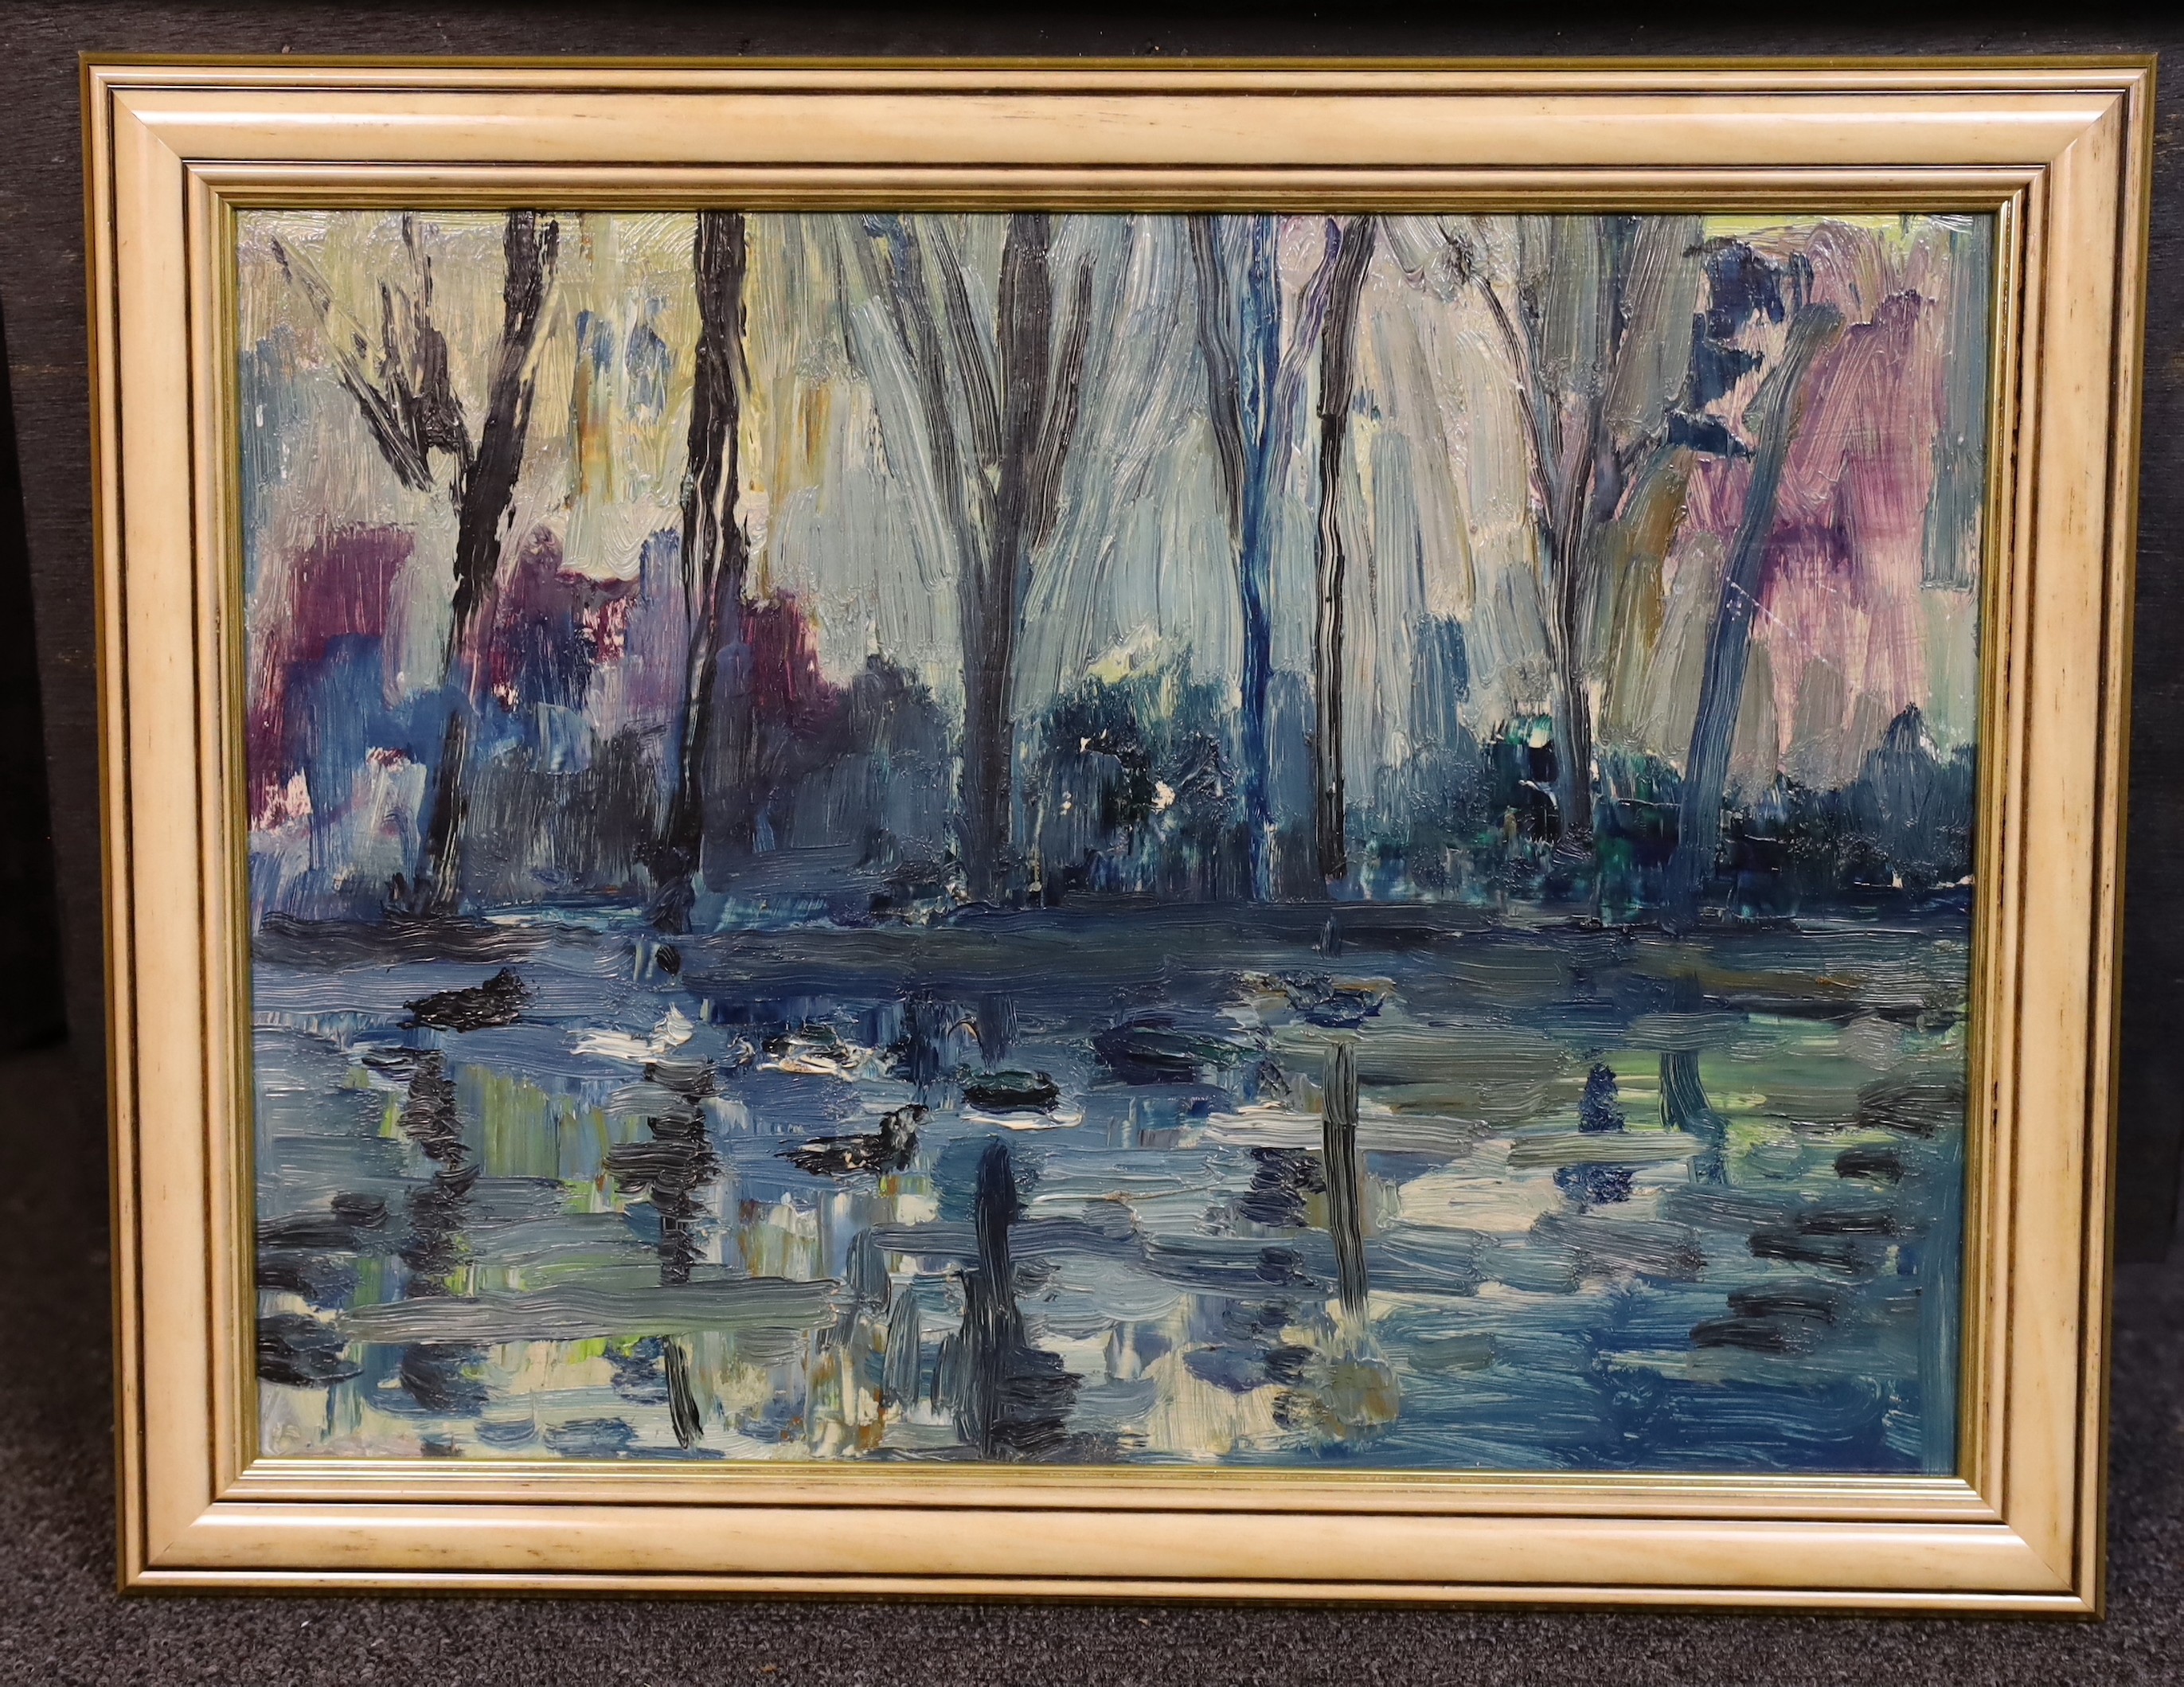 James Lawrence Isherwood (British, 1917- 1989), River landscape, oil on board, 29 x 39cm